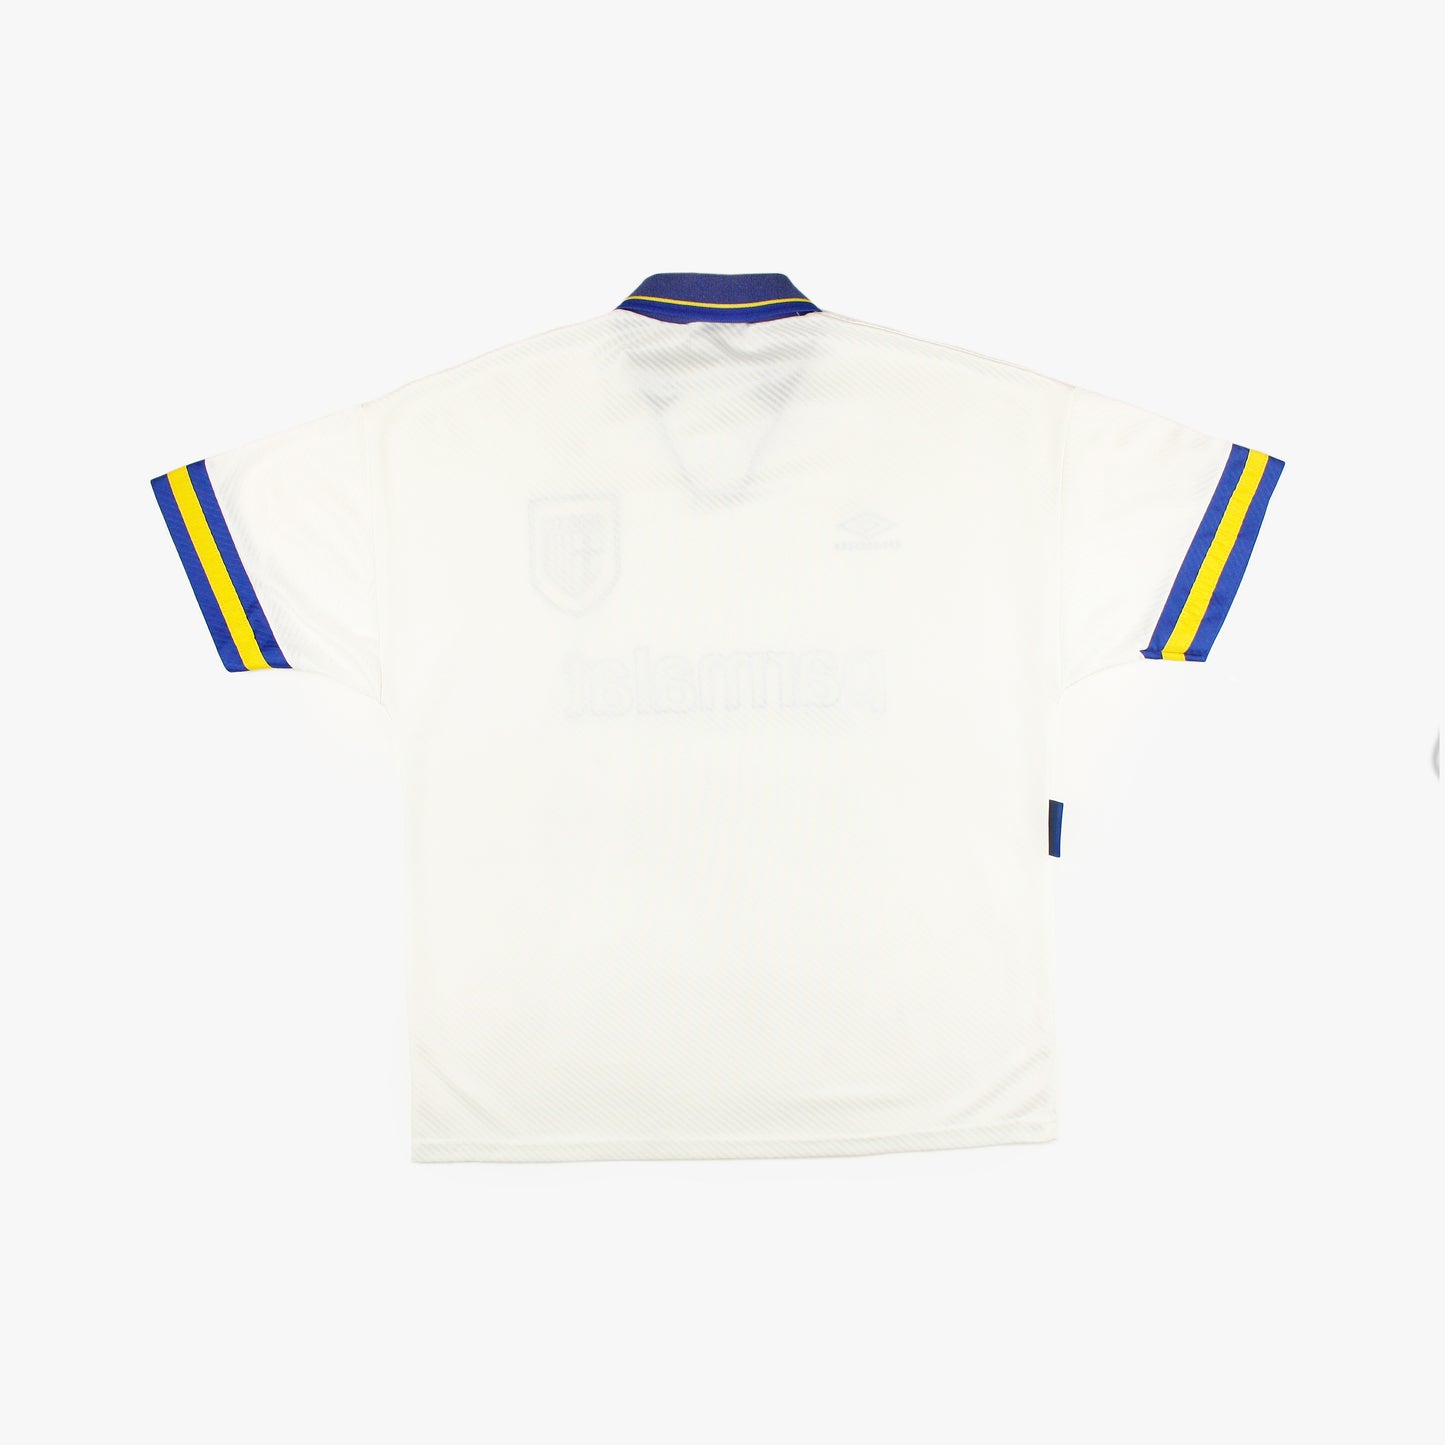 Parma 93/95 • Camiseta Local • L